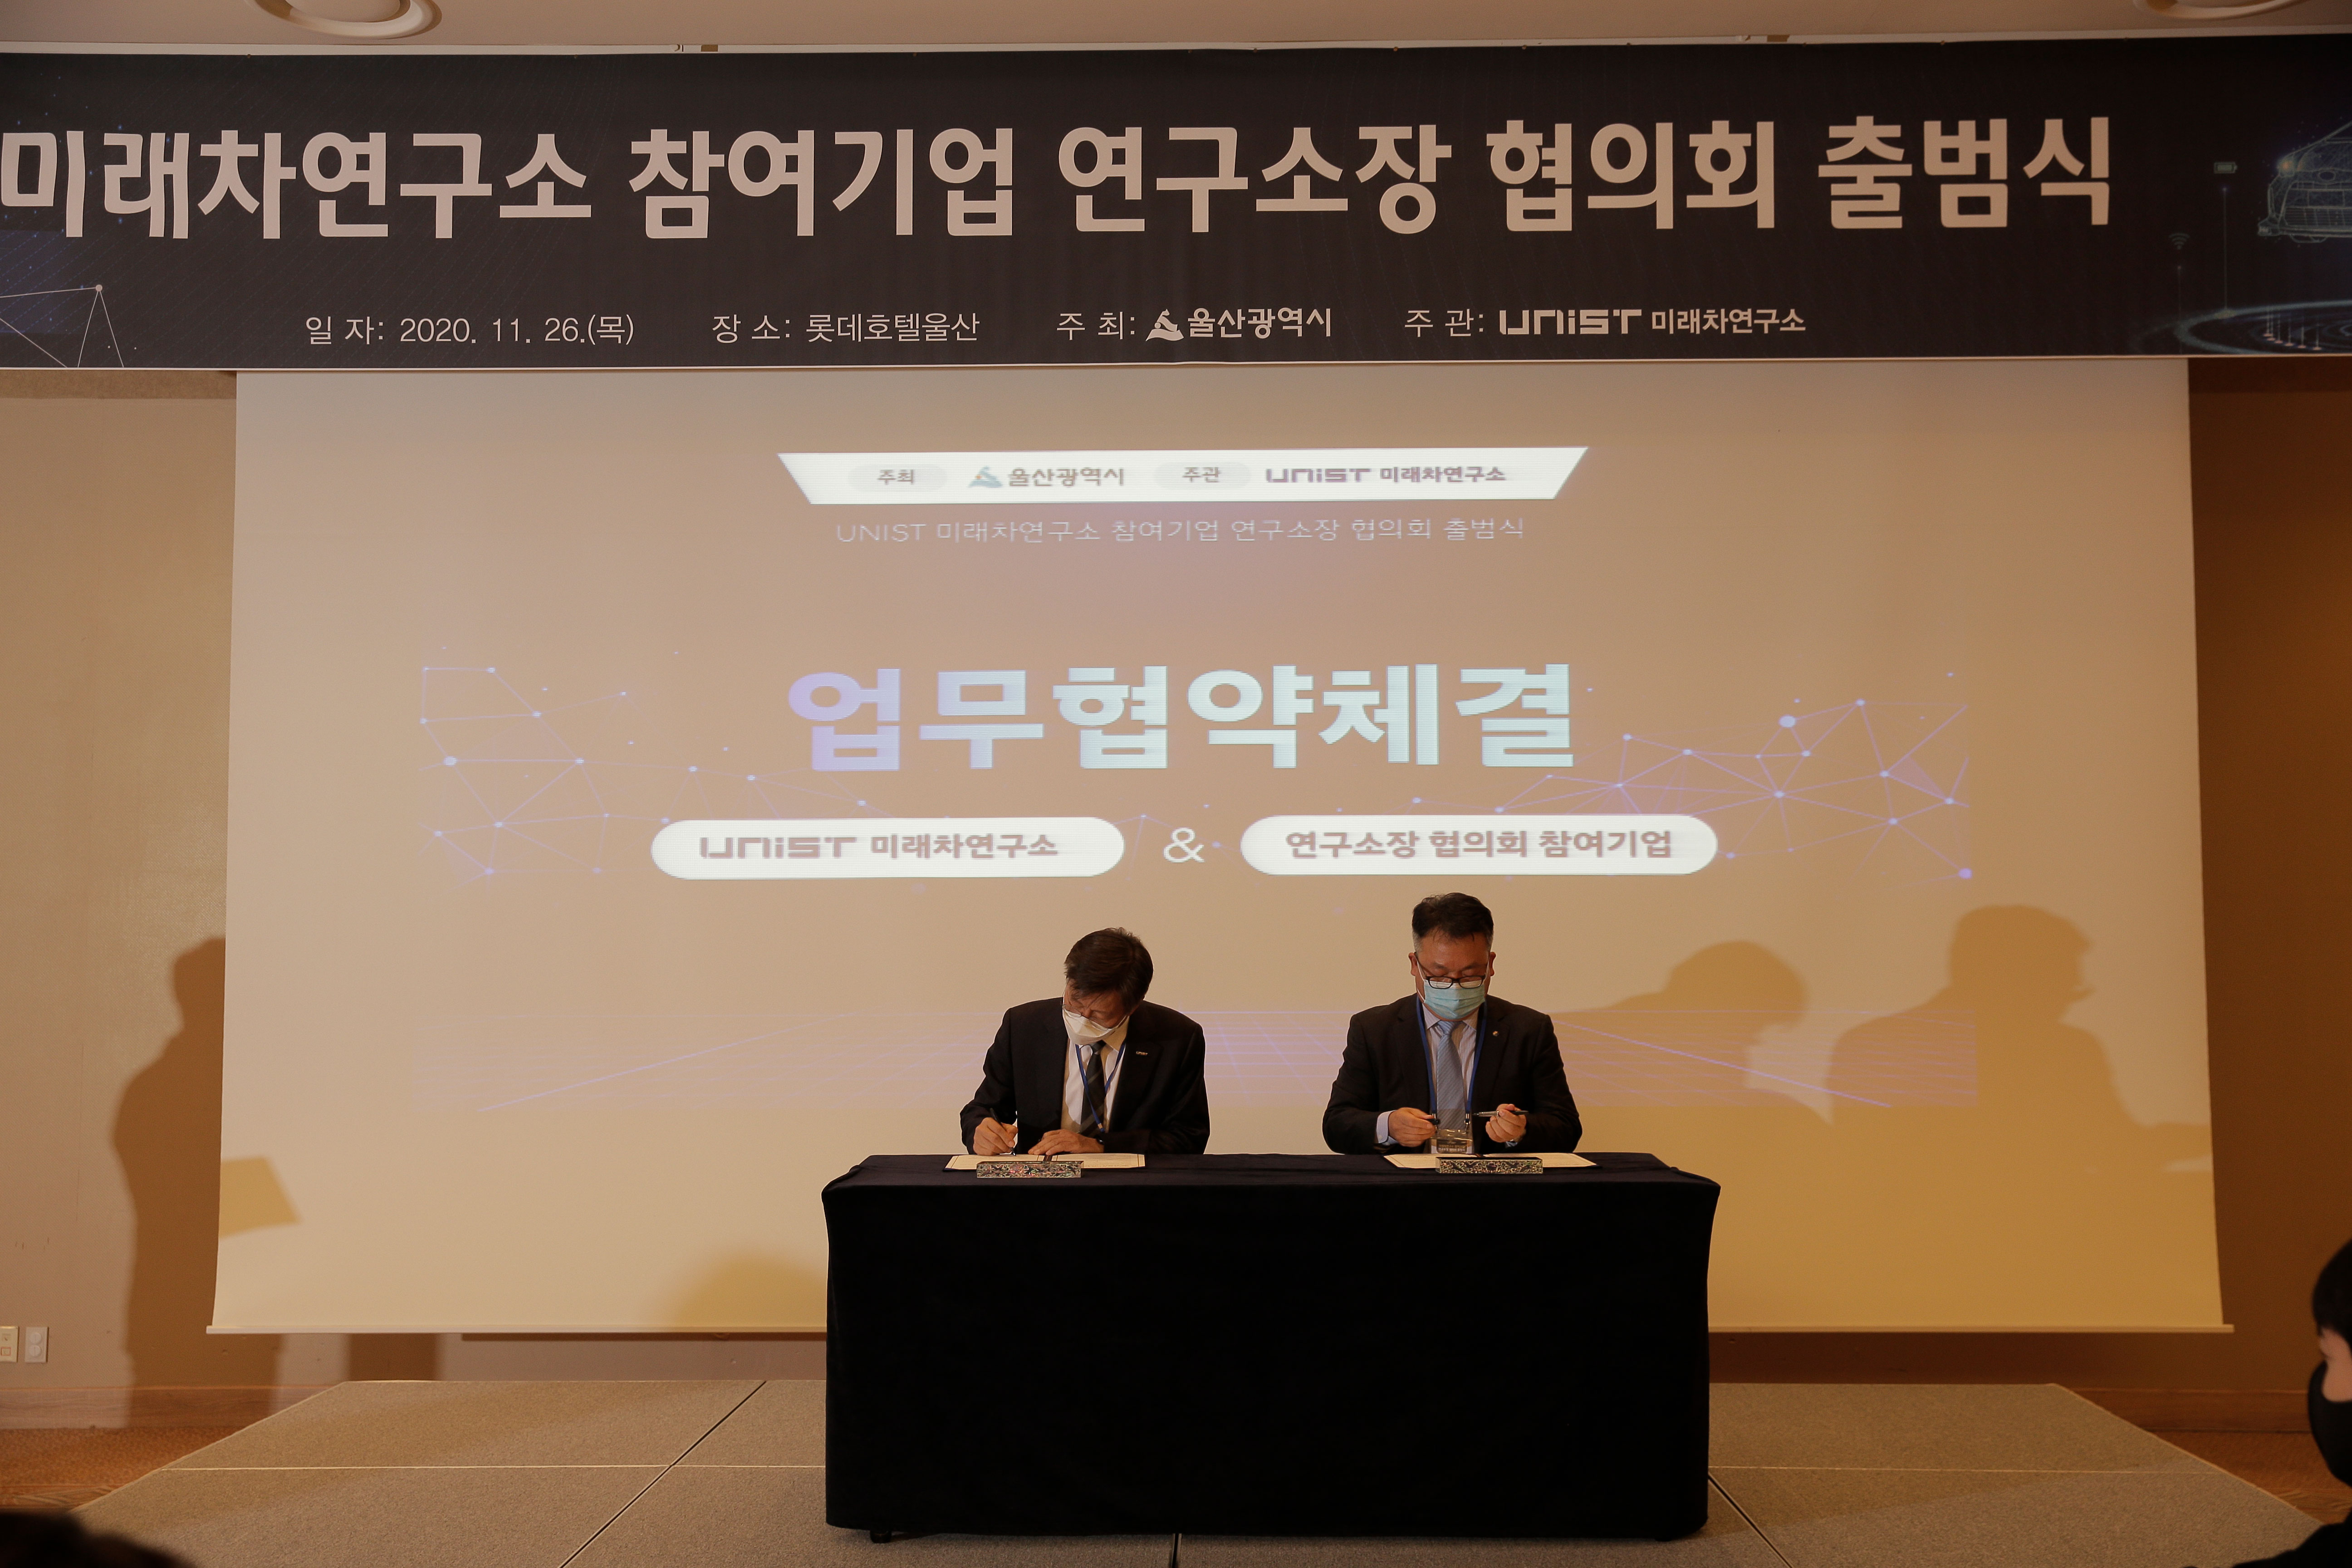 김학선 연구소장과 참여기업 대표가 협약서에 서명하고 있는 모습 | 사진: 김경채